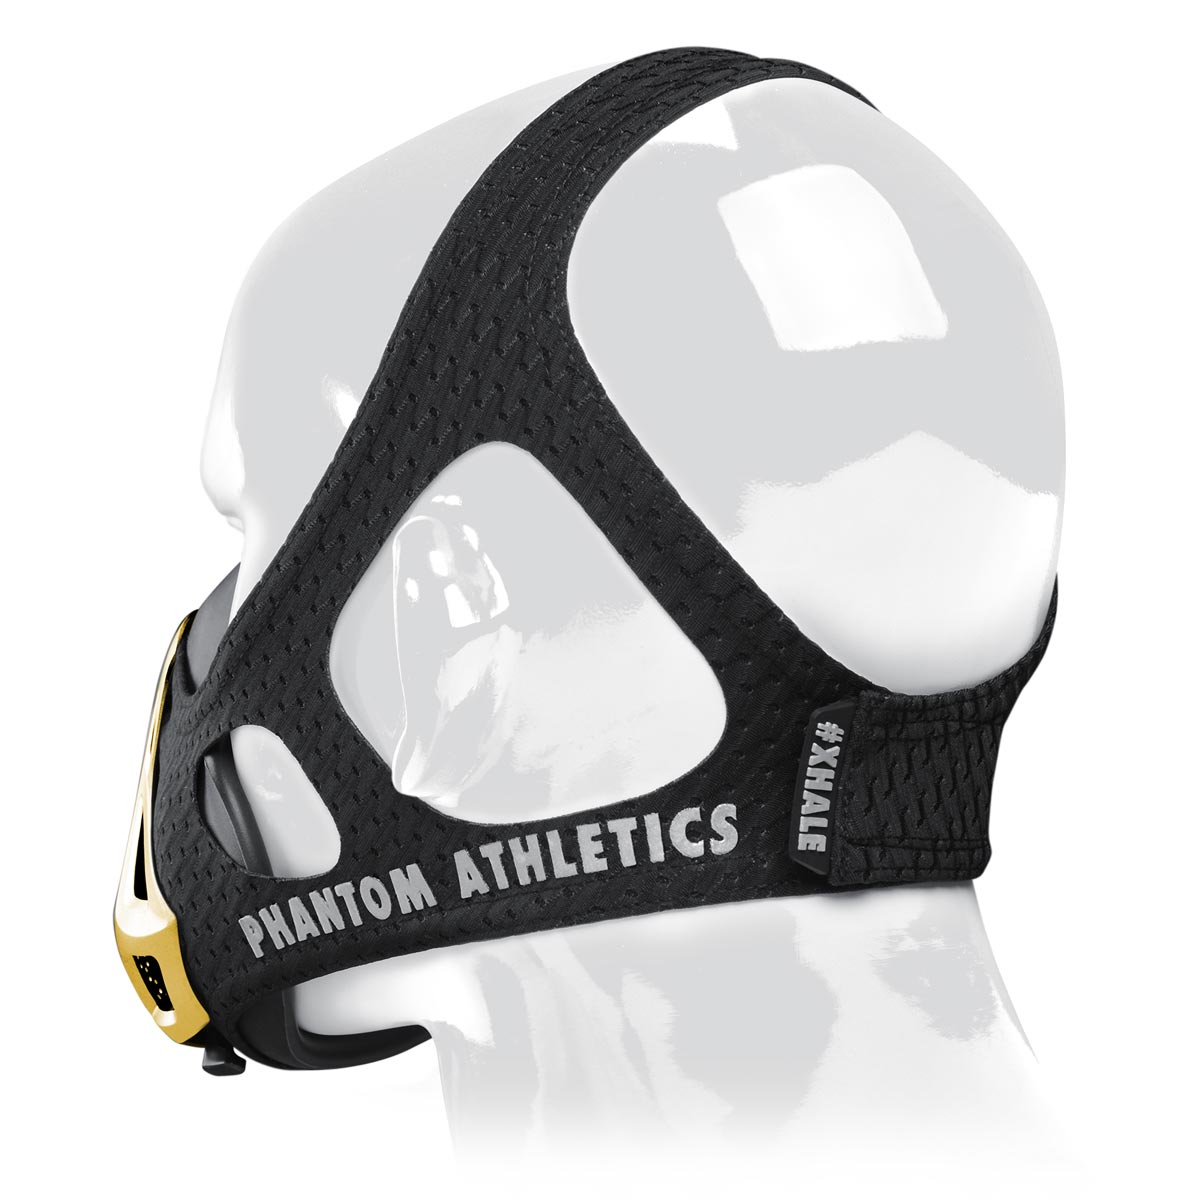 Die Phantom Trainingsmaske verfügt über ein patentiertes Kopfband um dir ein Maximum an Halt im Training zu geben. Jetzt in limitierter Gold Edition.